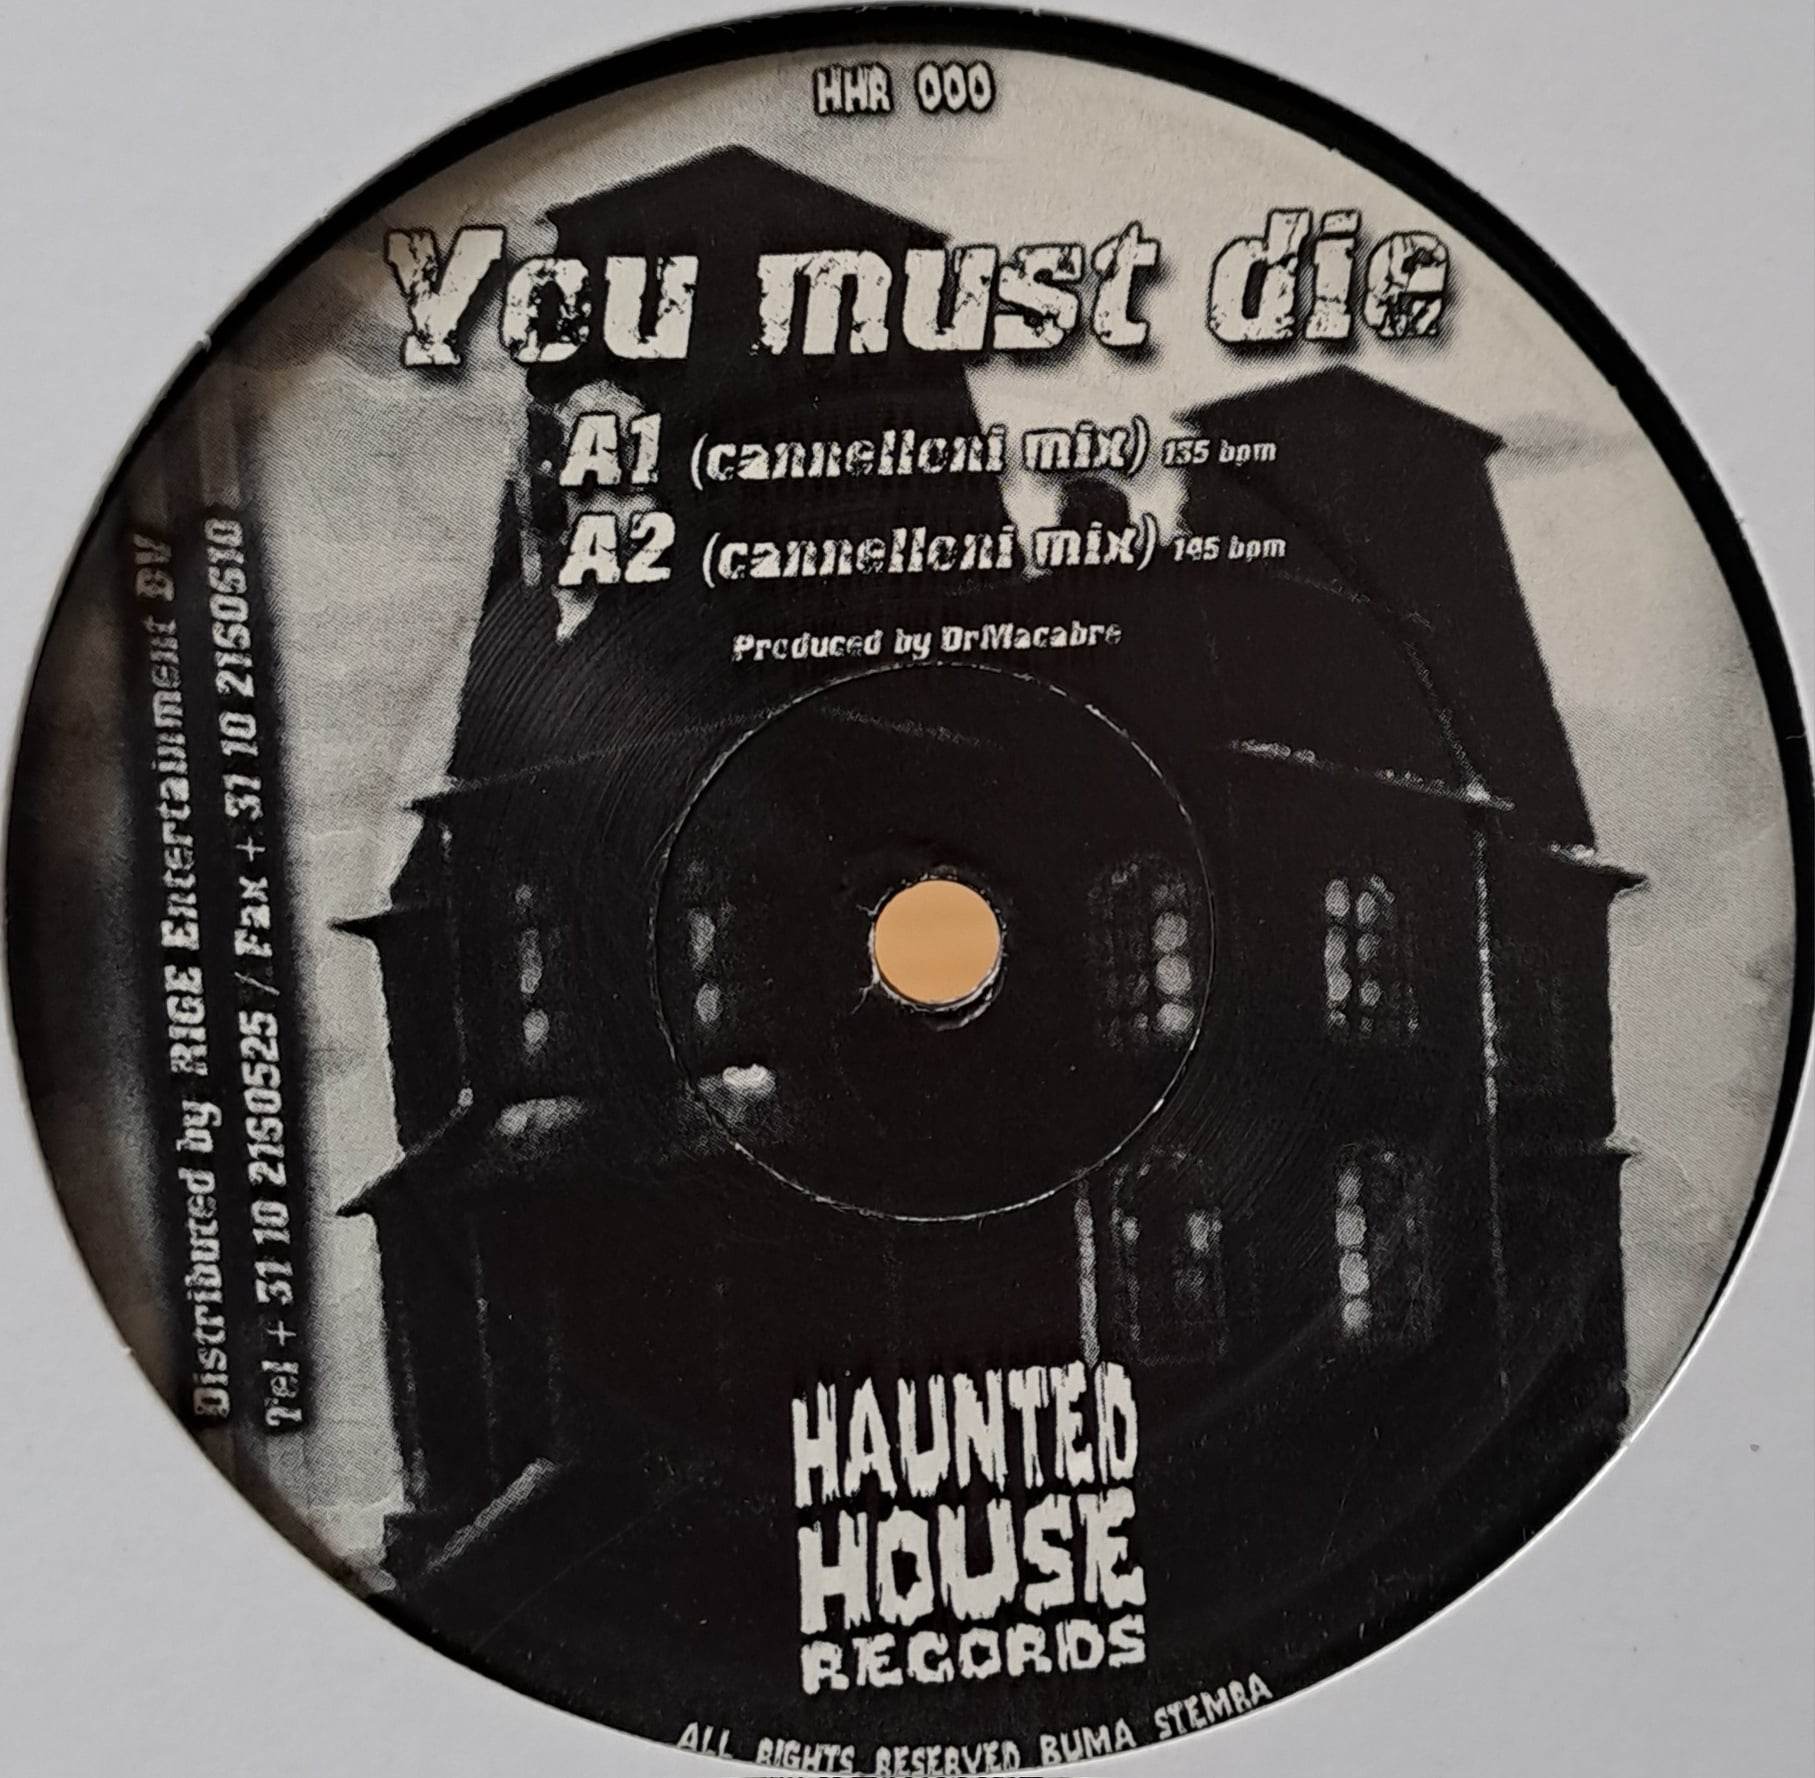 Haunted House Records 00 - vinyle doomcore